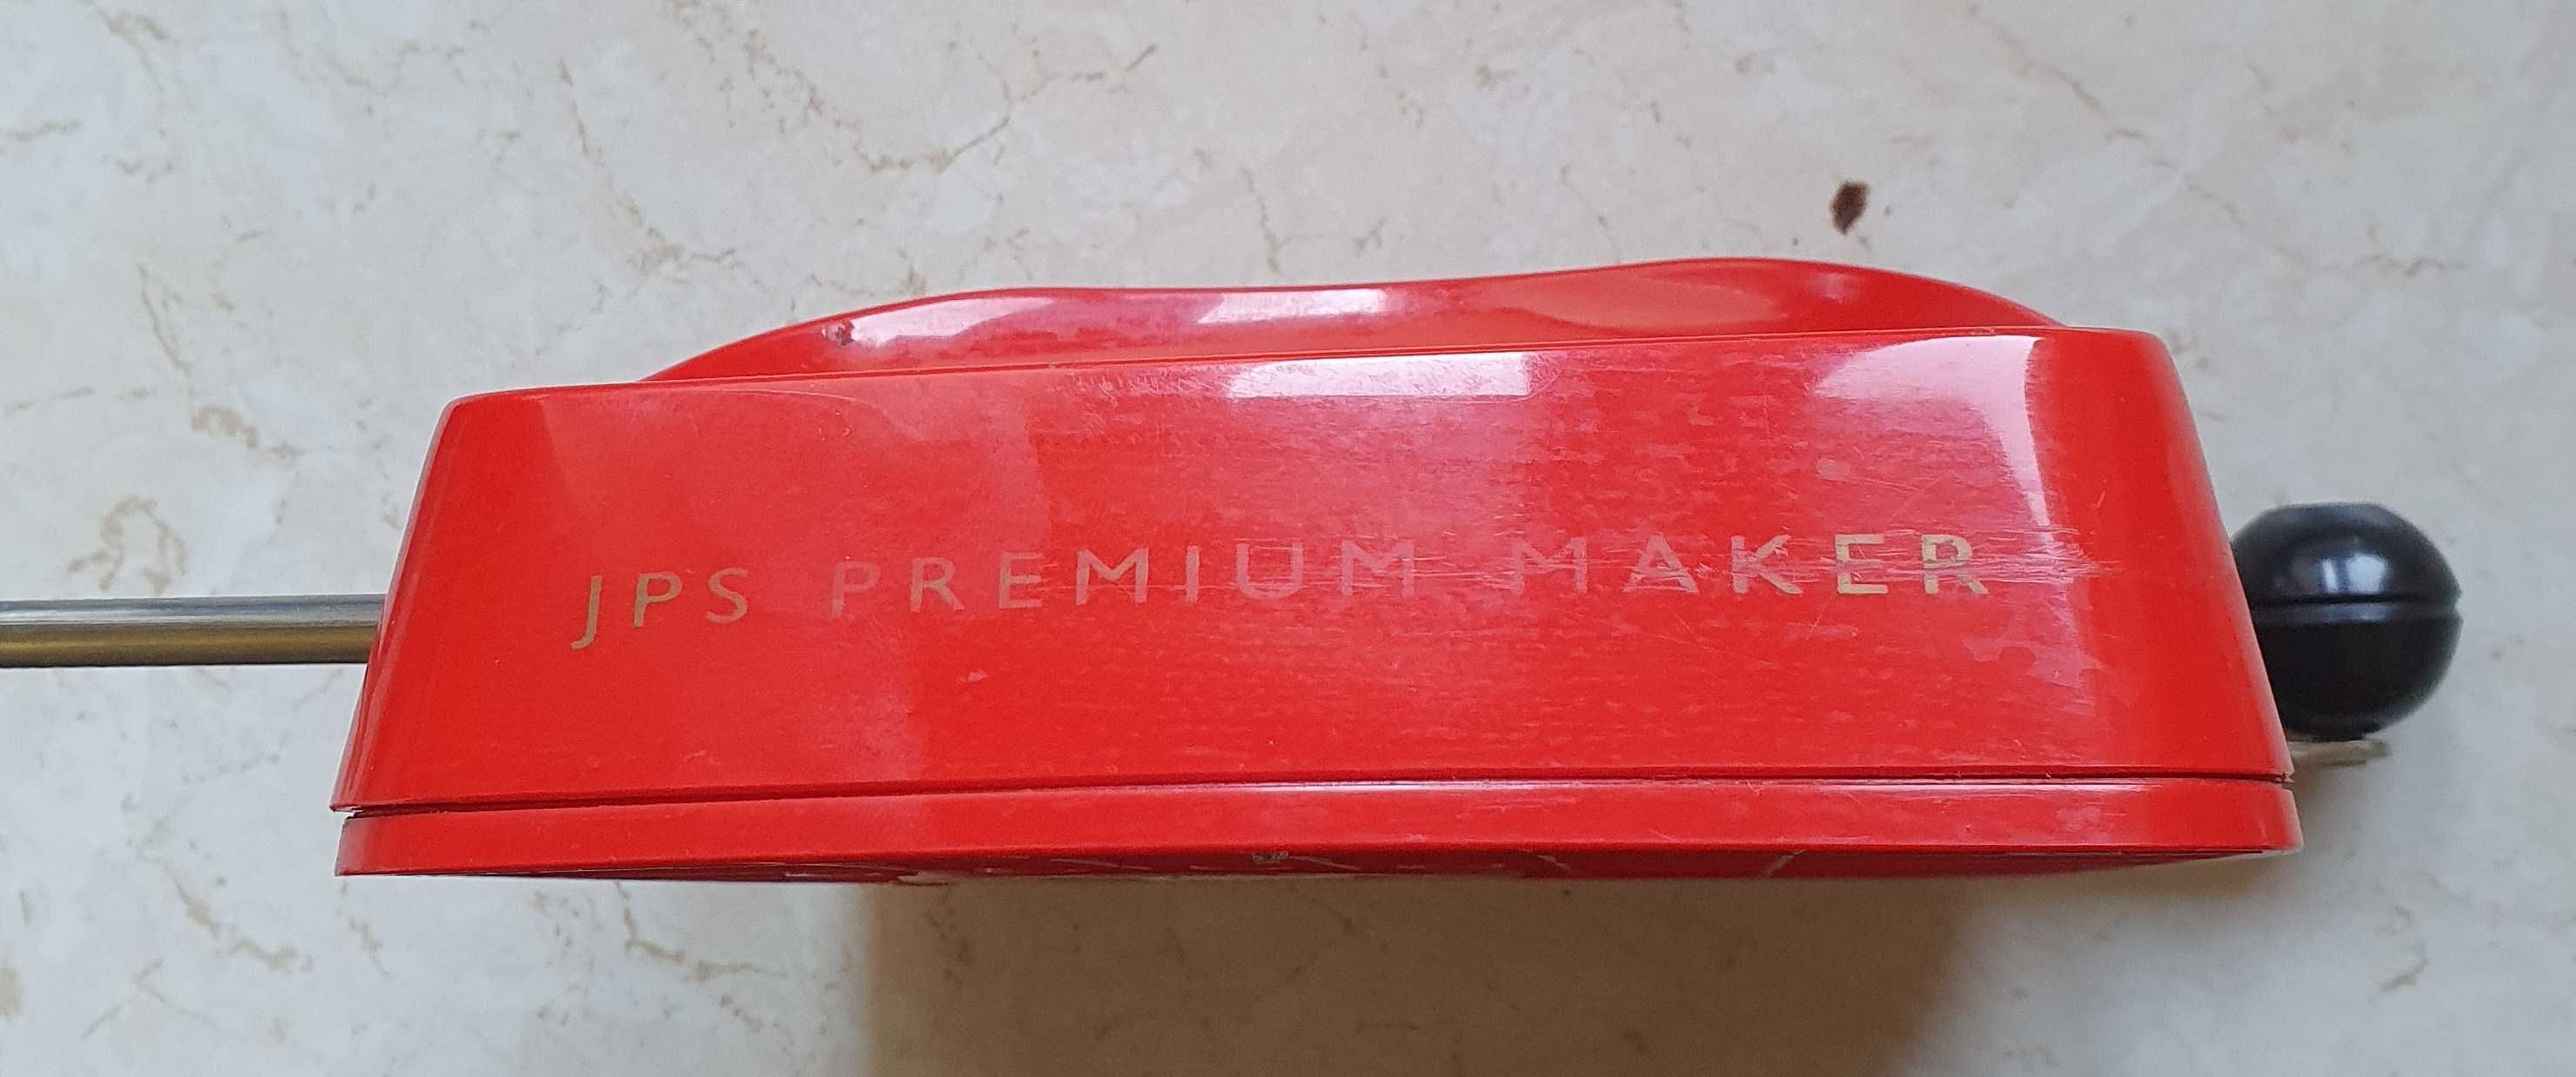 Ręczna tłokowa maszynka do papierosów JPS Premium Maker